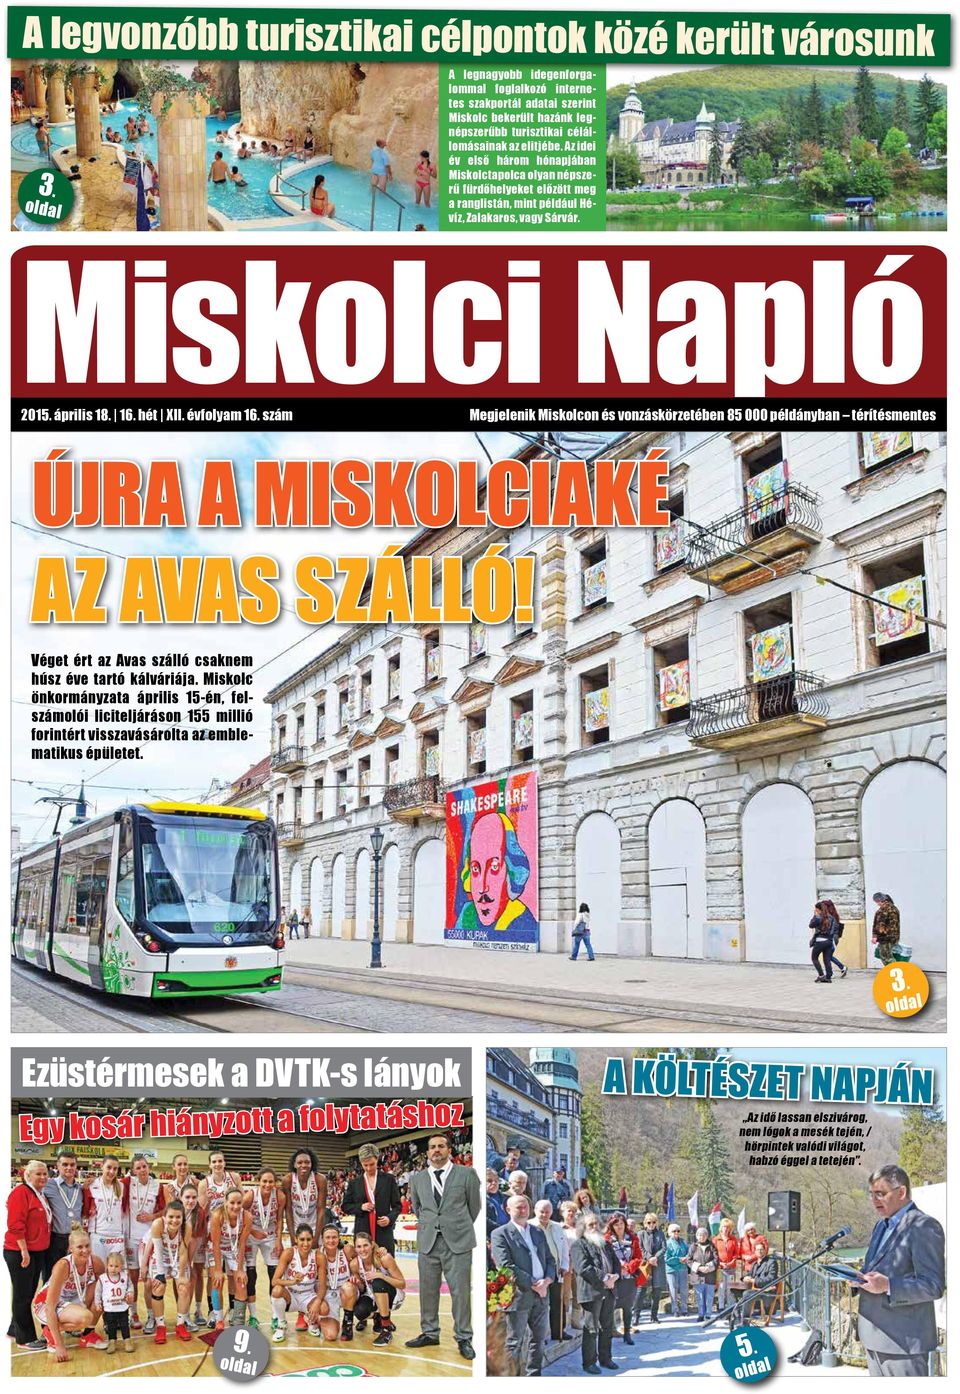 Az idei év első három hónapjában Miskolctapolca olyan népszerű fürdőhelyeket előzött meg a ranglistán, mint például Hévíz, Zalakaros, vagy Sárvár. Miskolci Napló 2015. április 18. 16. hét XII.